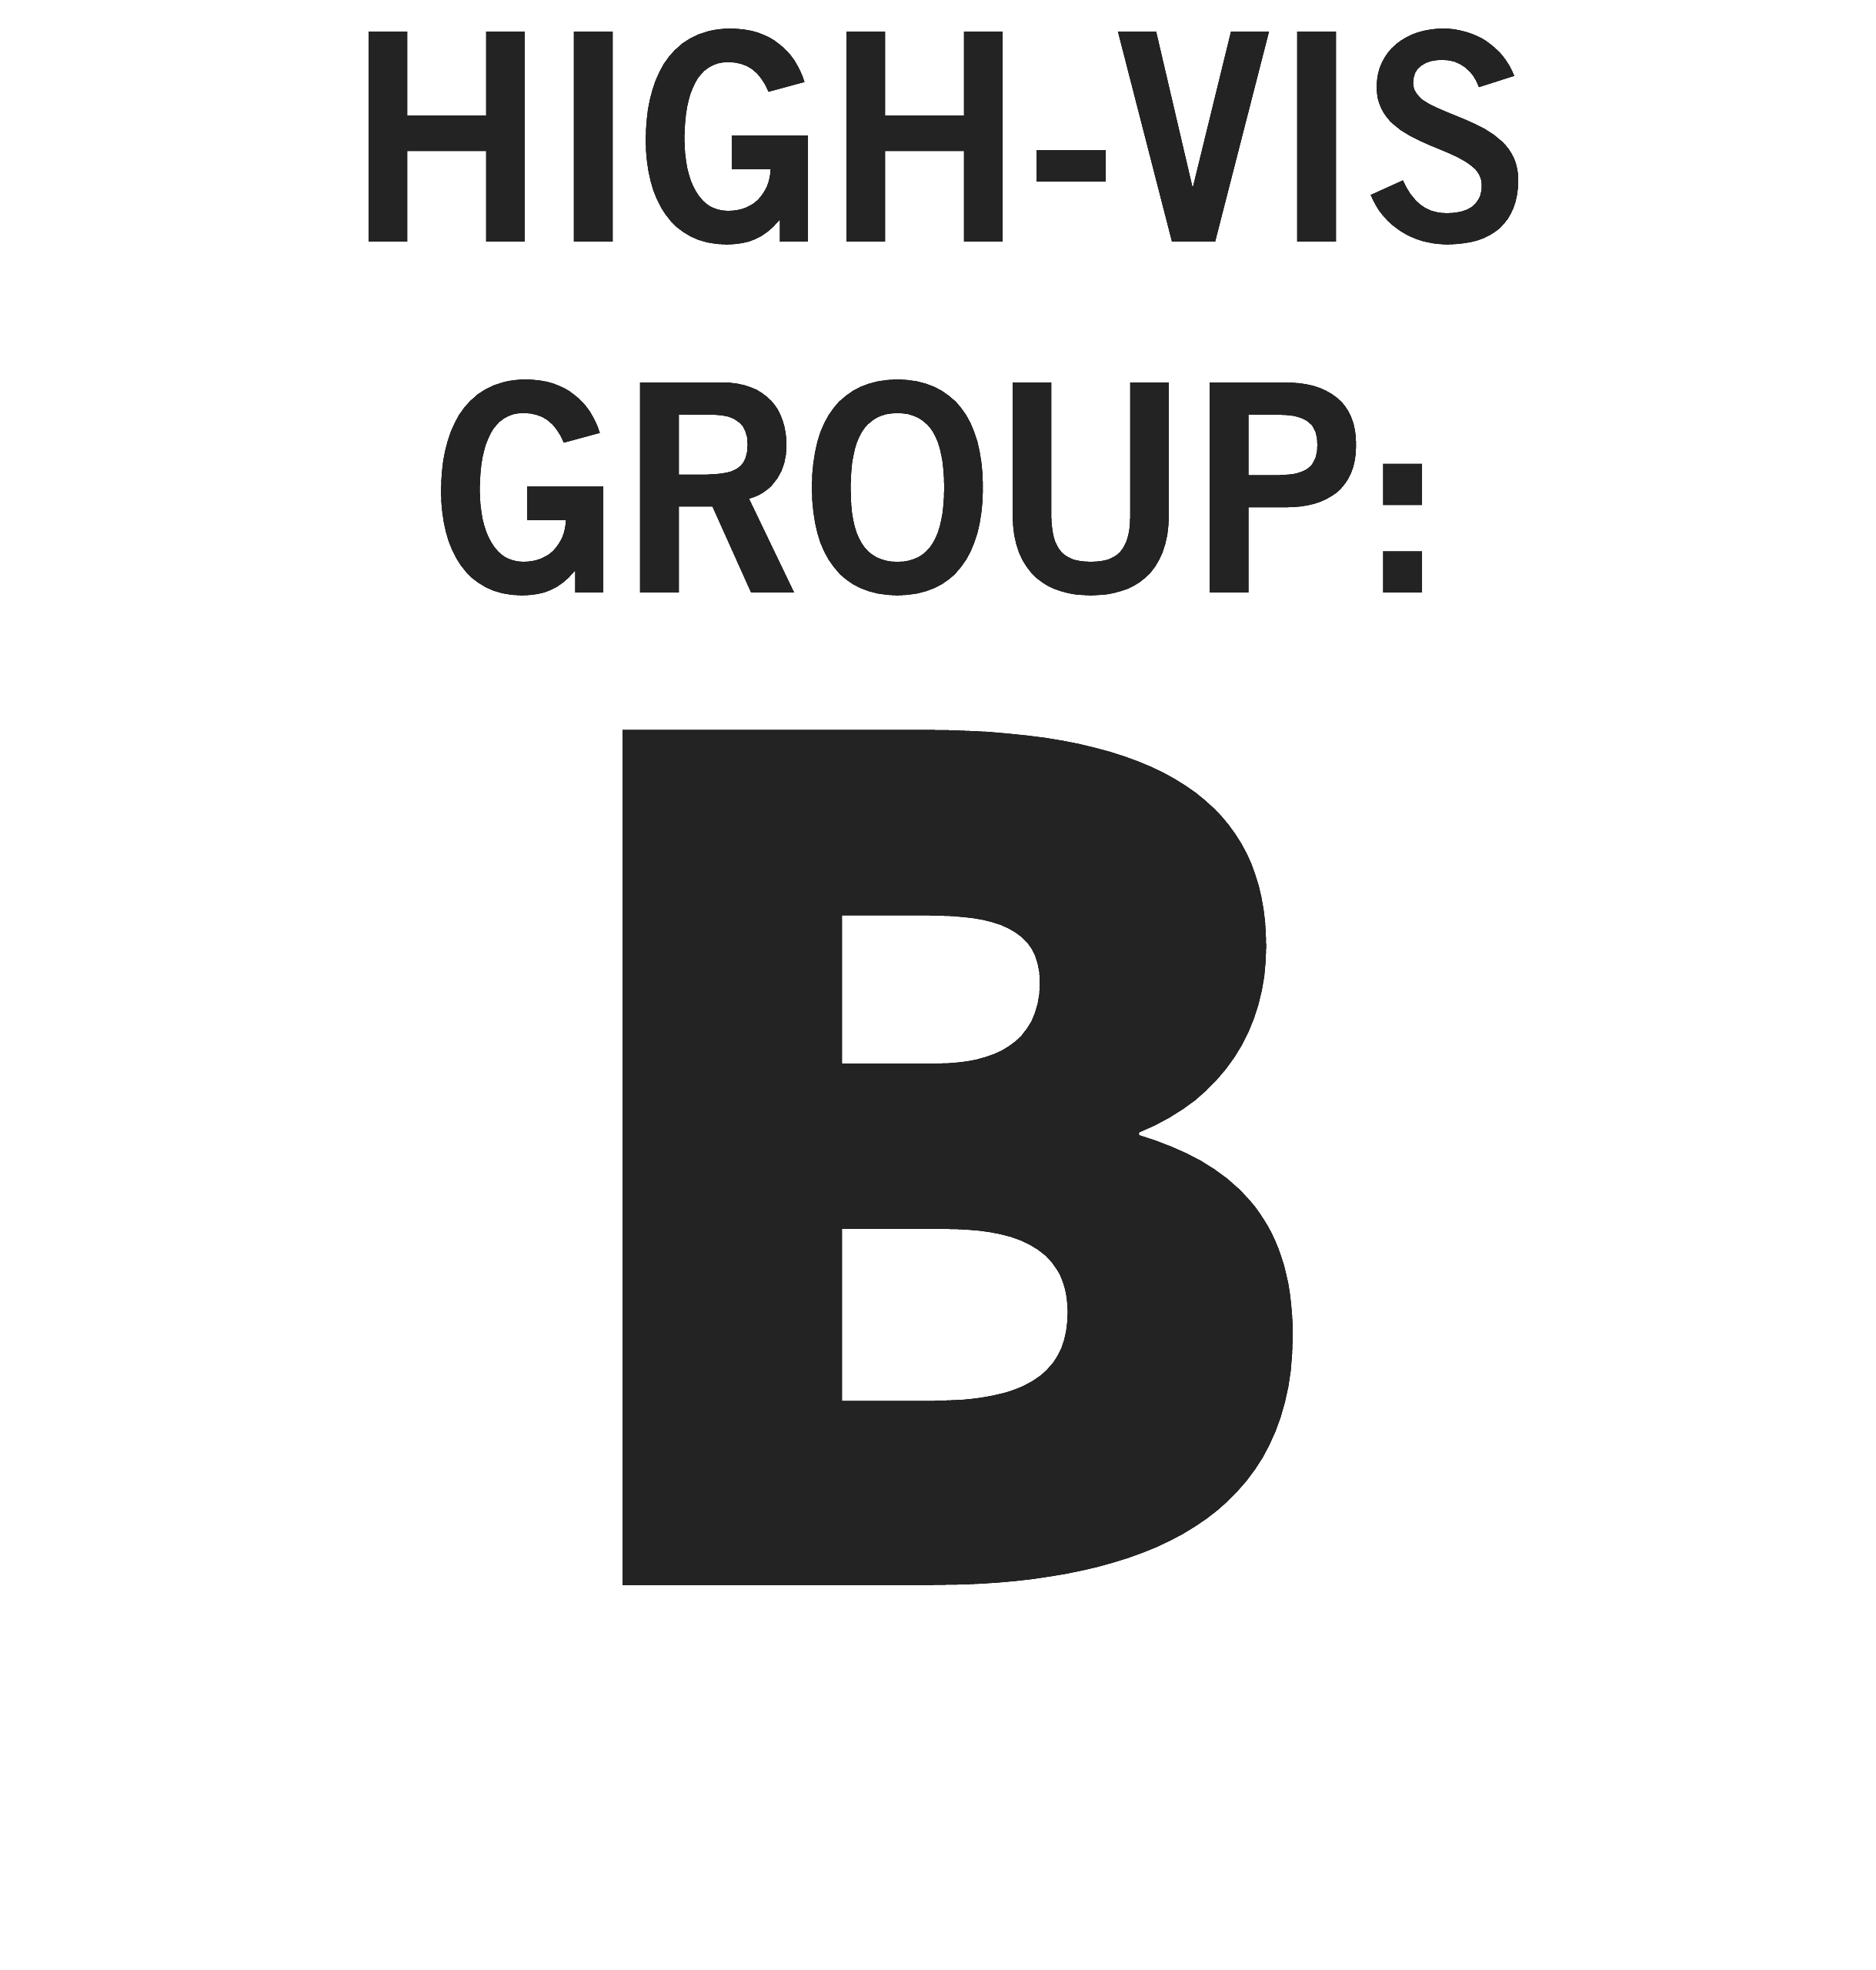 High-vis Group B